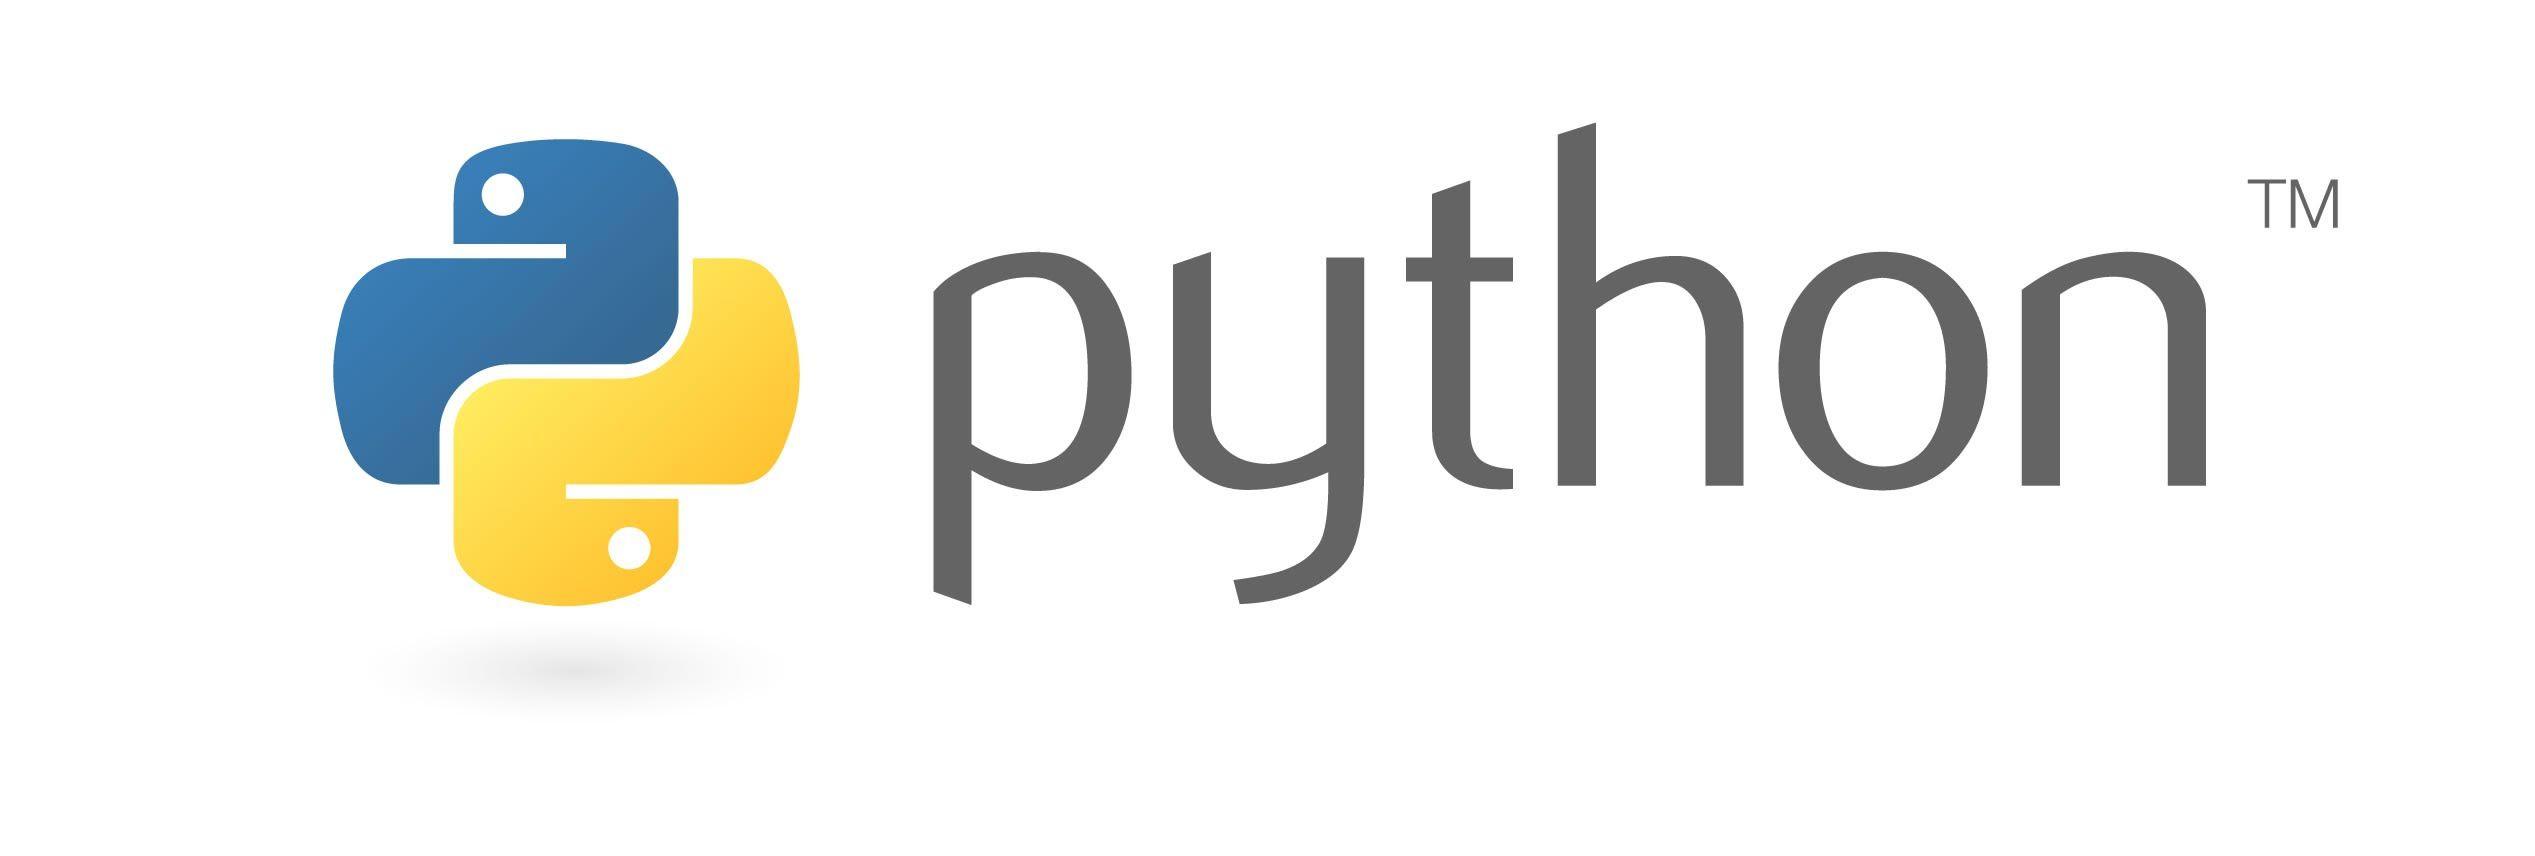 Python Logo - python-logo - FBK